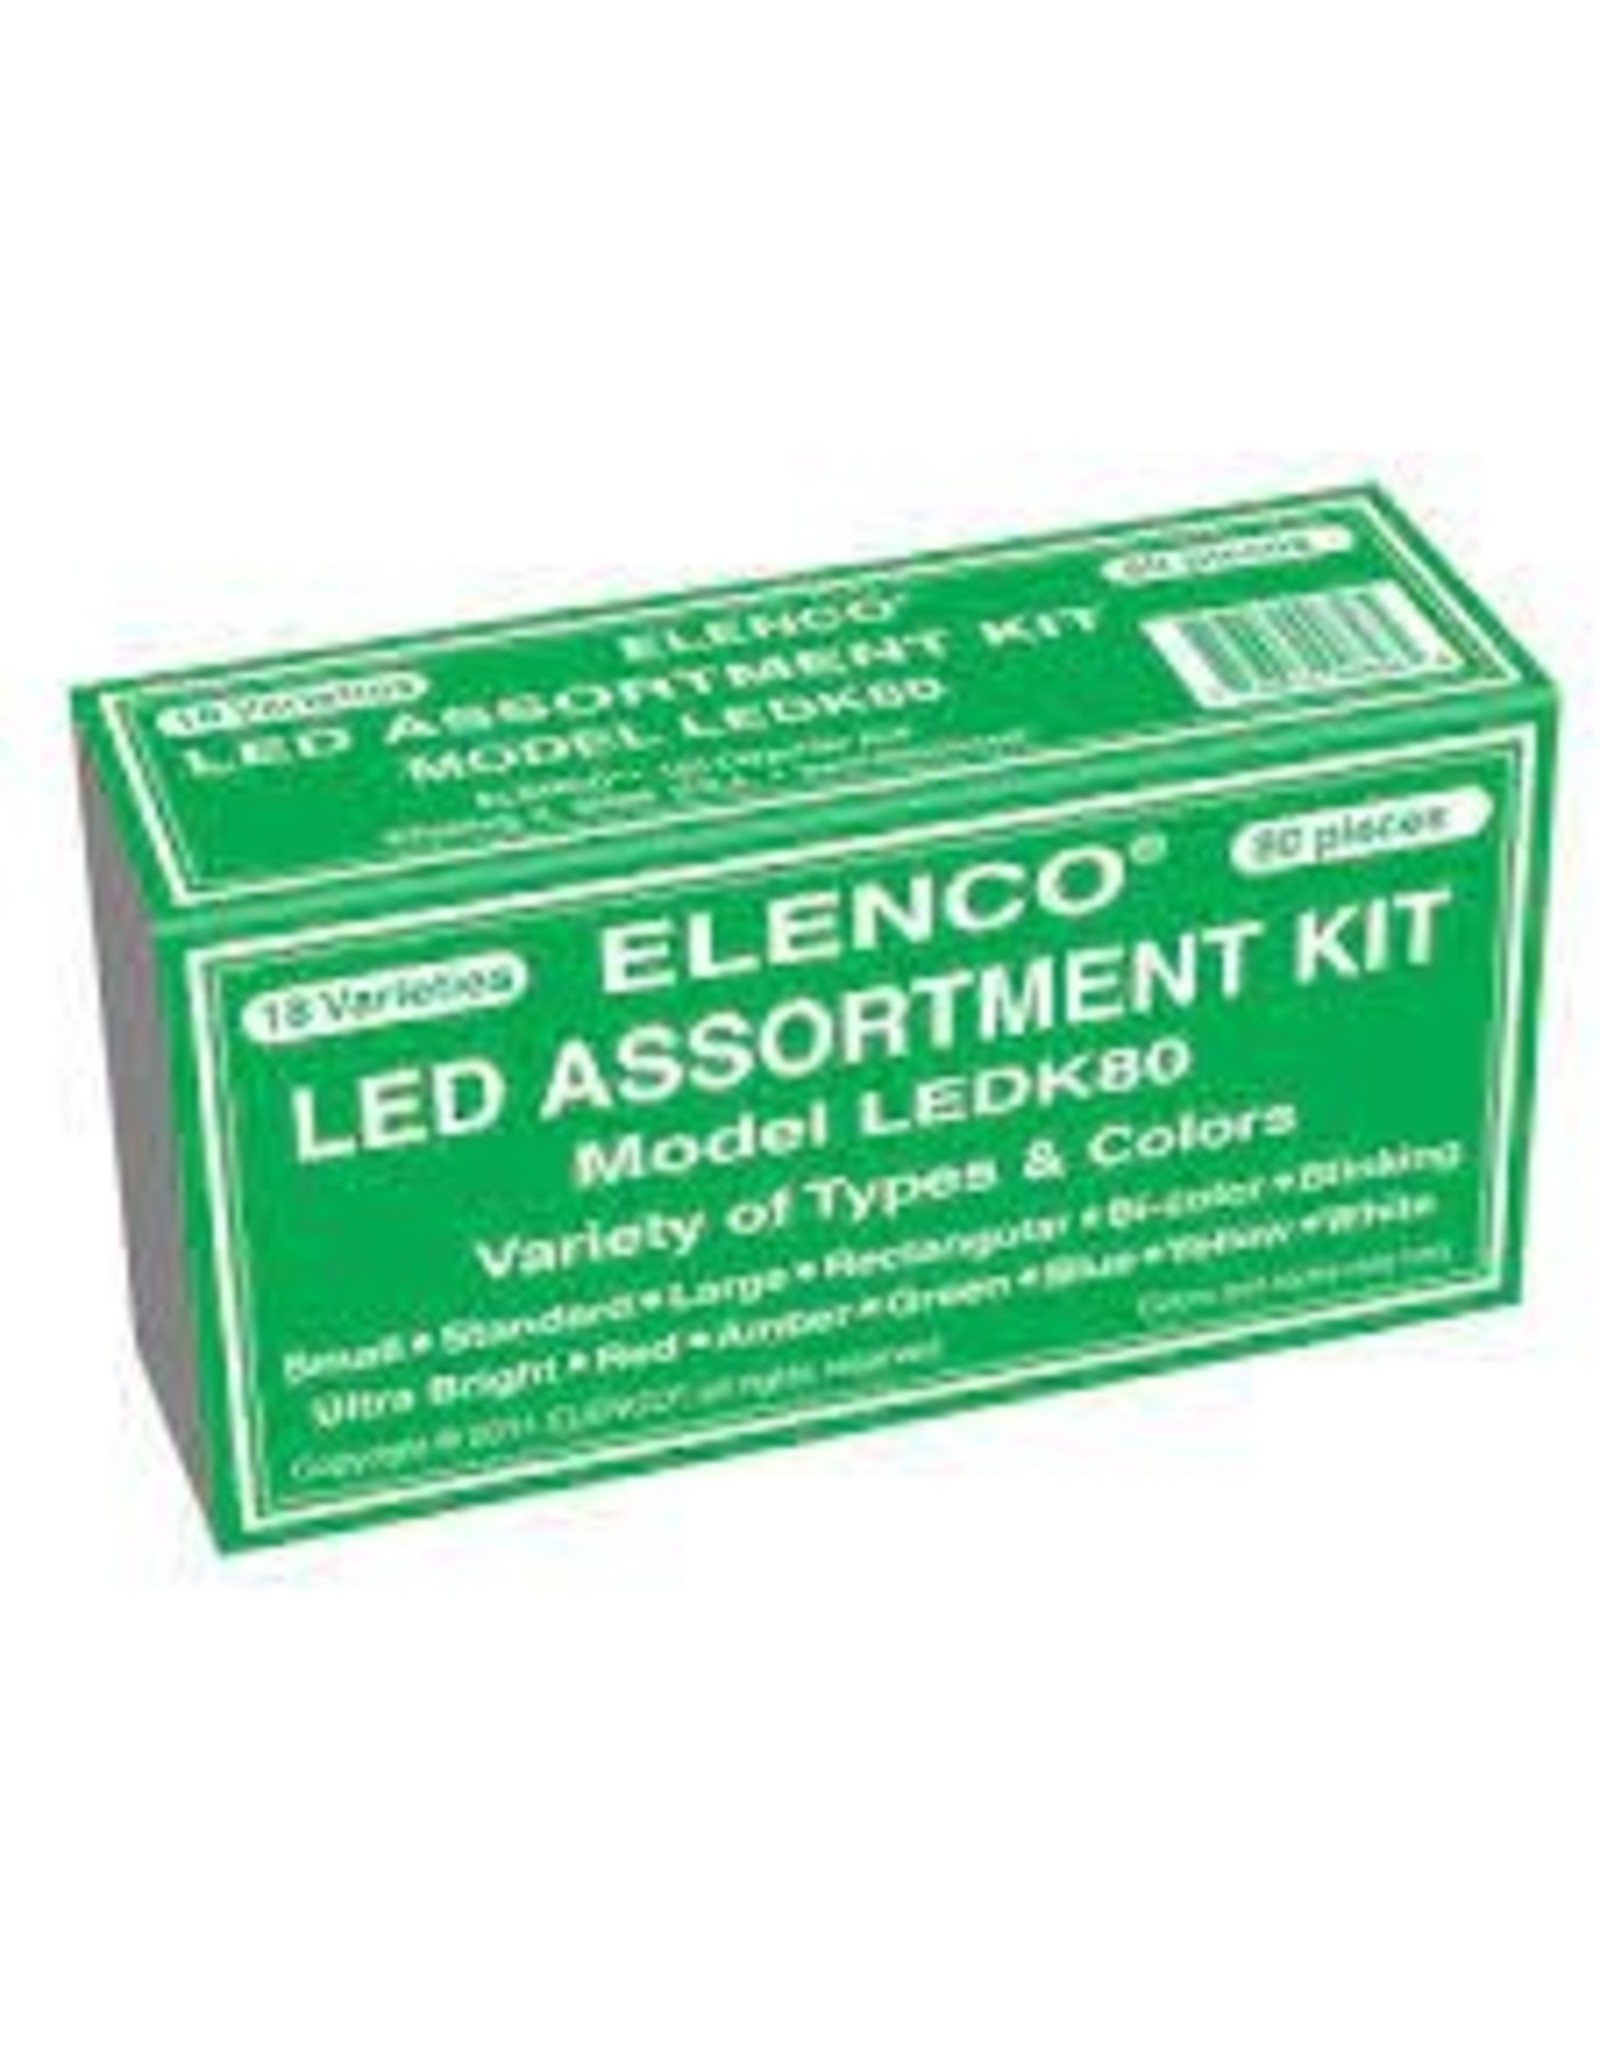 80pc. LED Assortment Kit